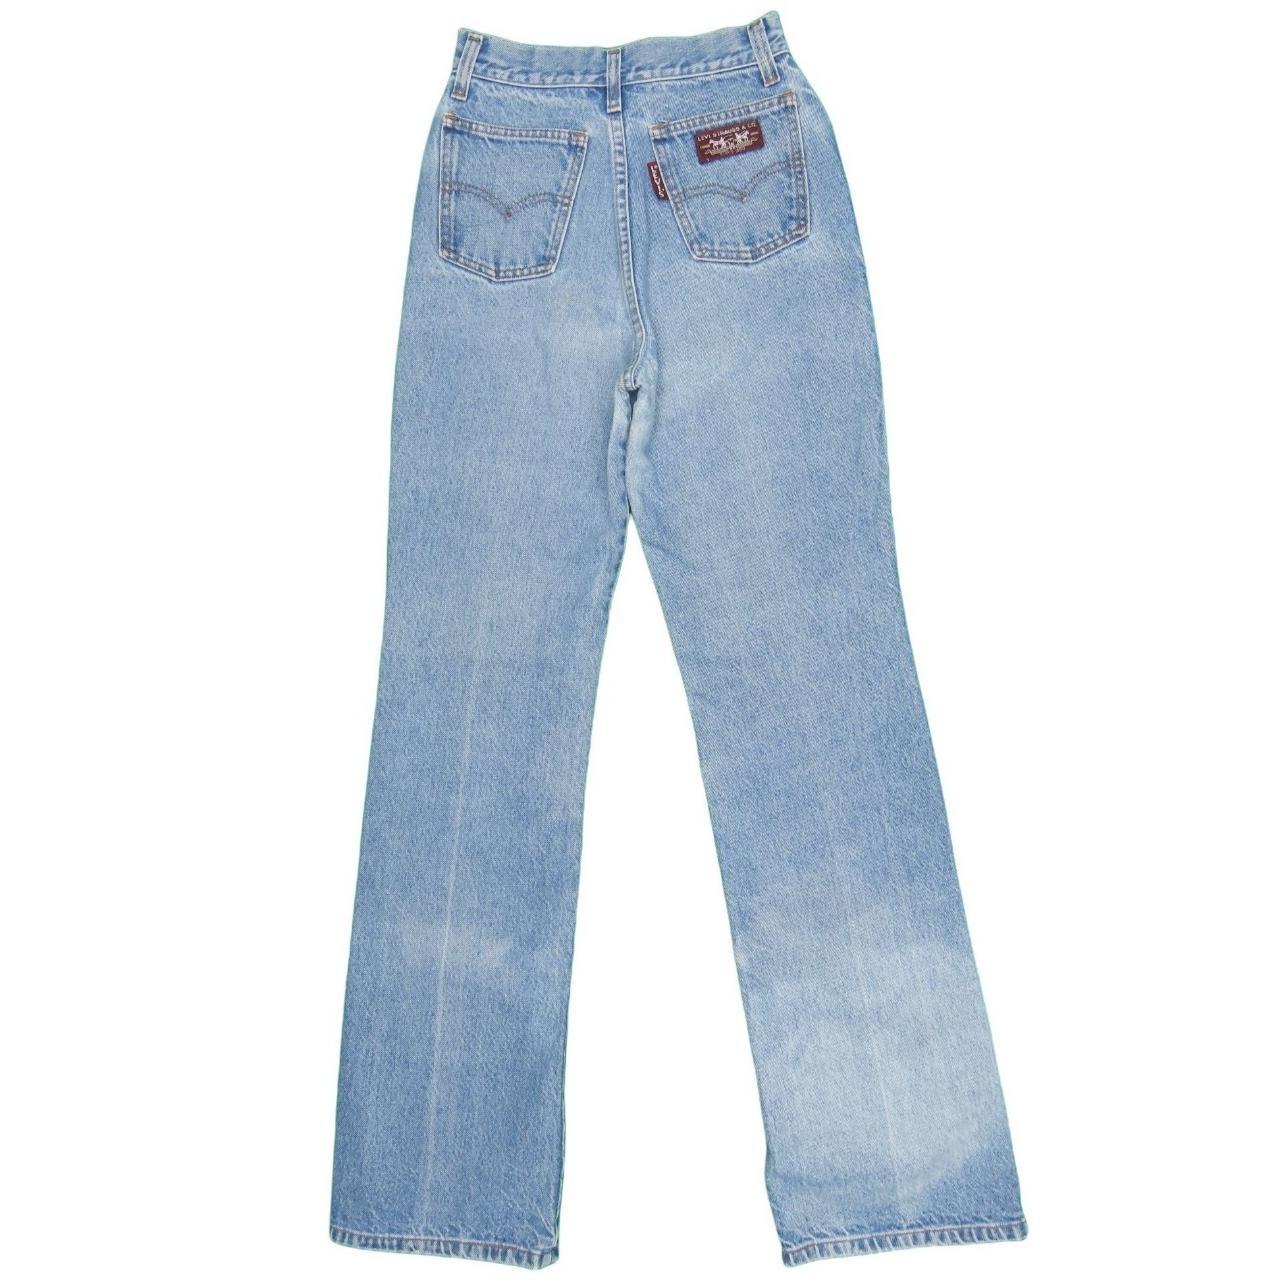 1960s/1970s Vintage Big E Levis Jeans... - Depop